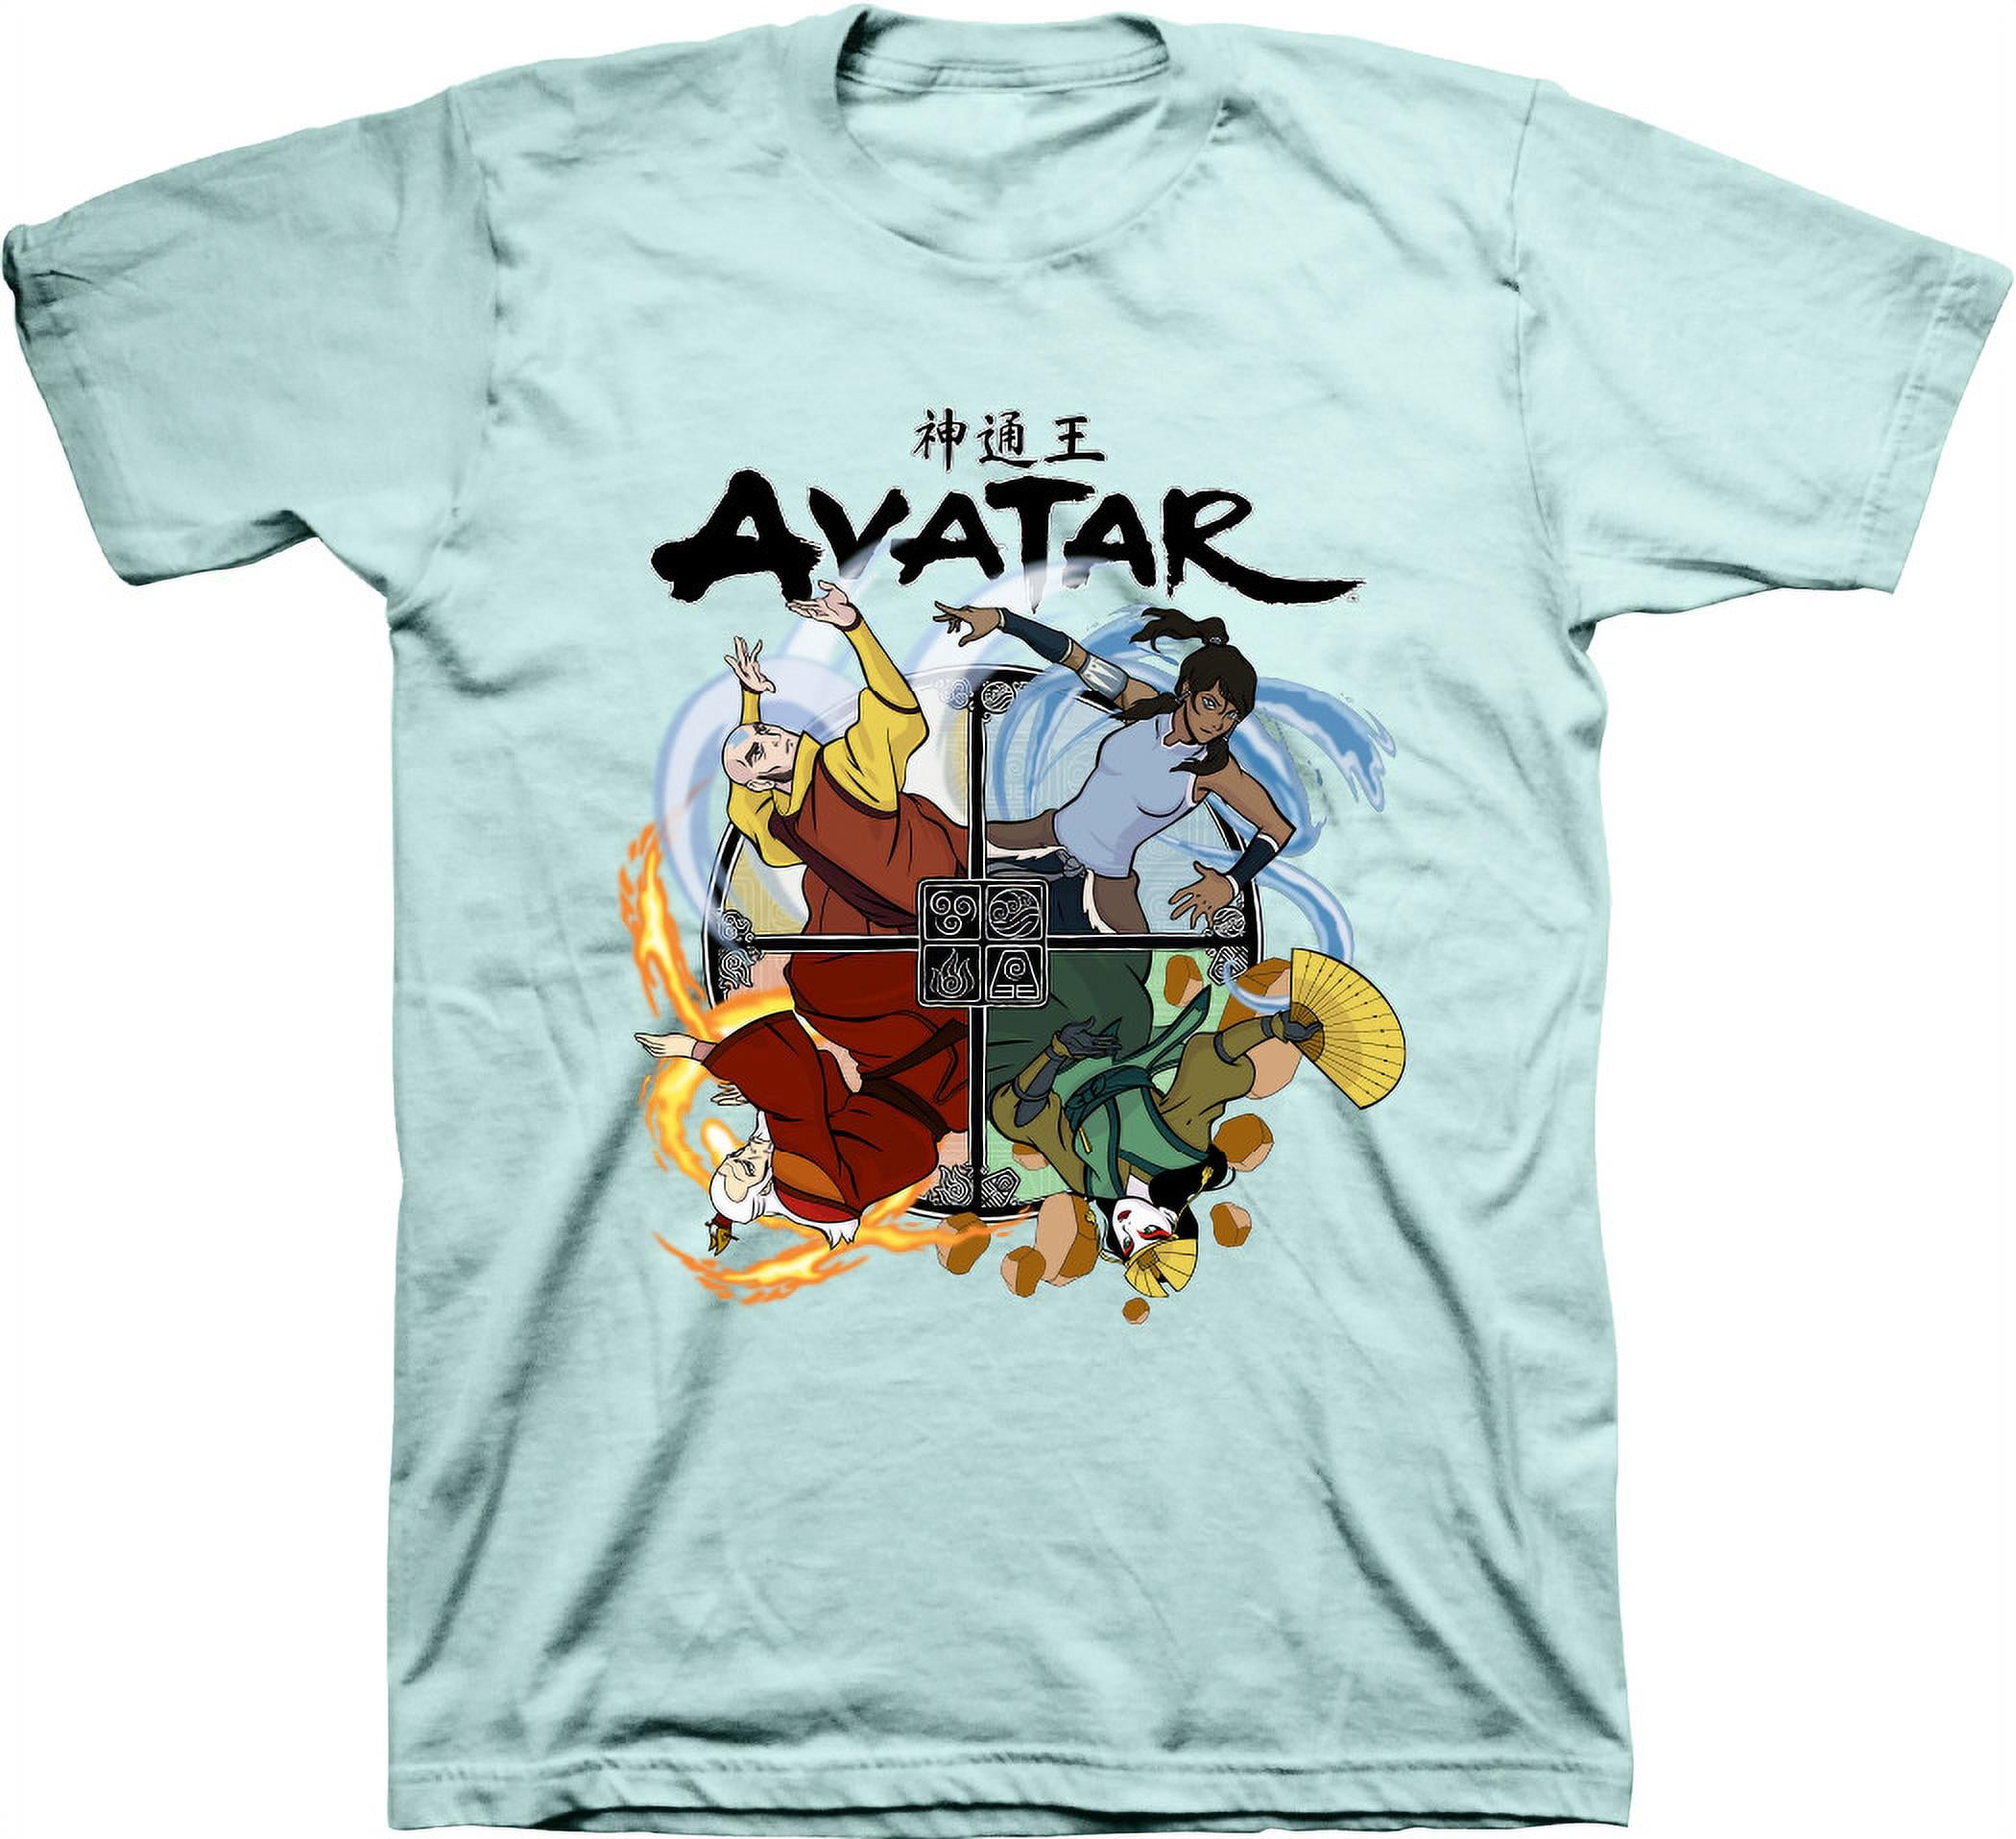 Avatar 2009 film James Camerons Vintage tshirt vintage phosphorus glow  Large black by shirtsforeveryone17 o  Vintage tshirts Vintage shirts  Trending outfits